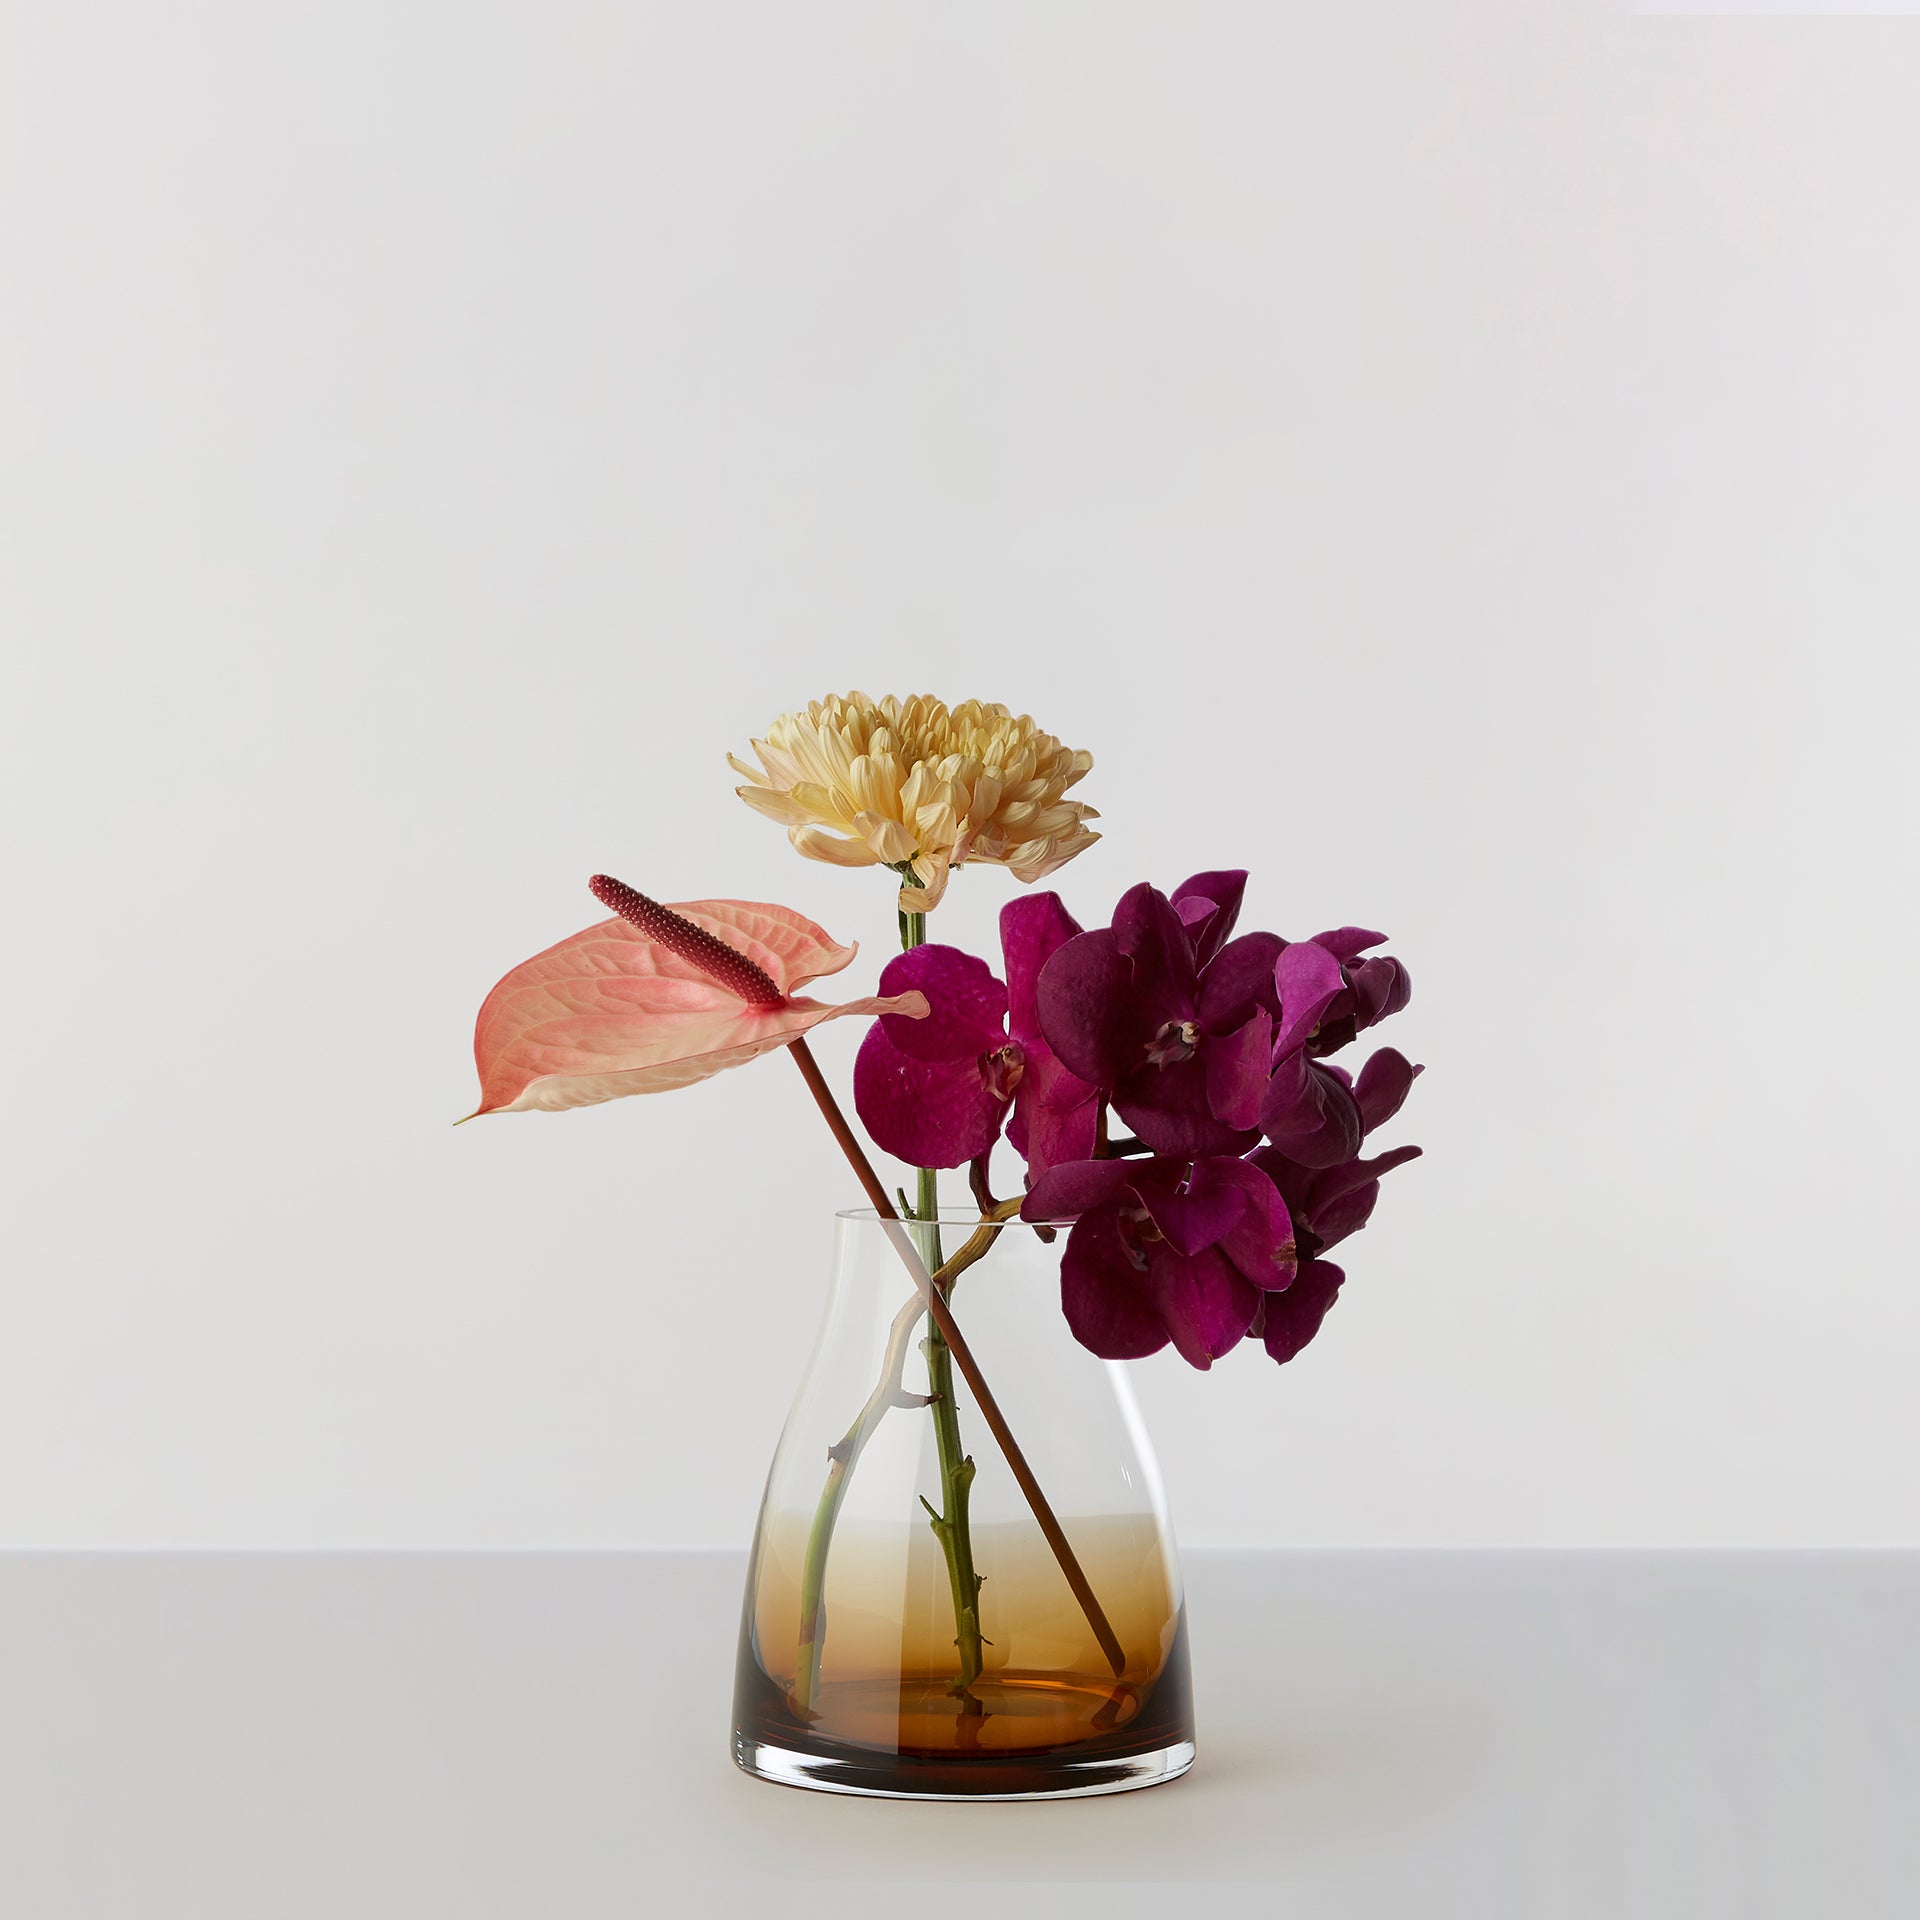 Billede af Flower Vase no. 2 - Burnt sienna